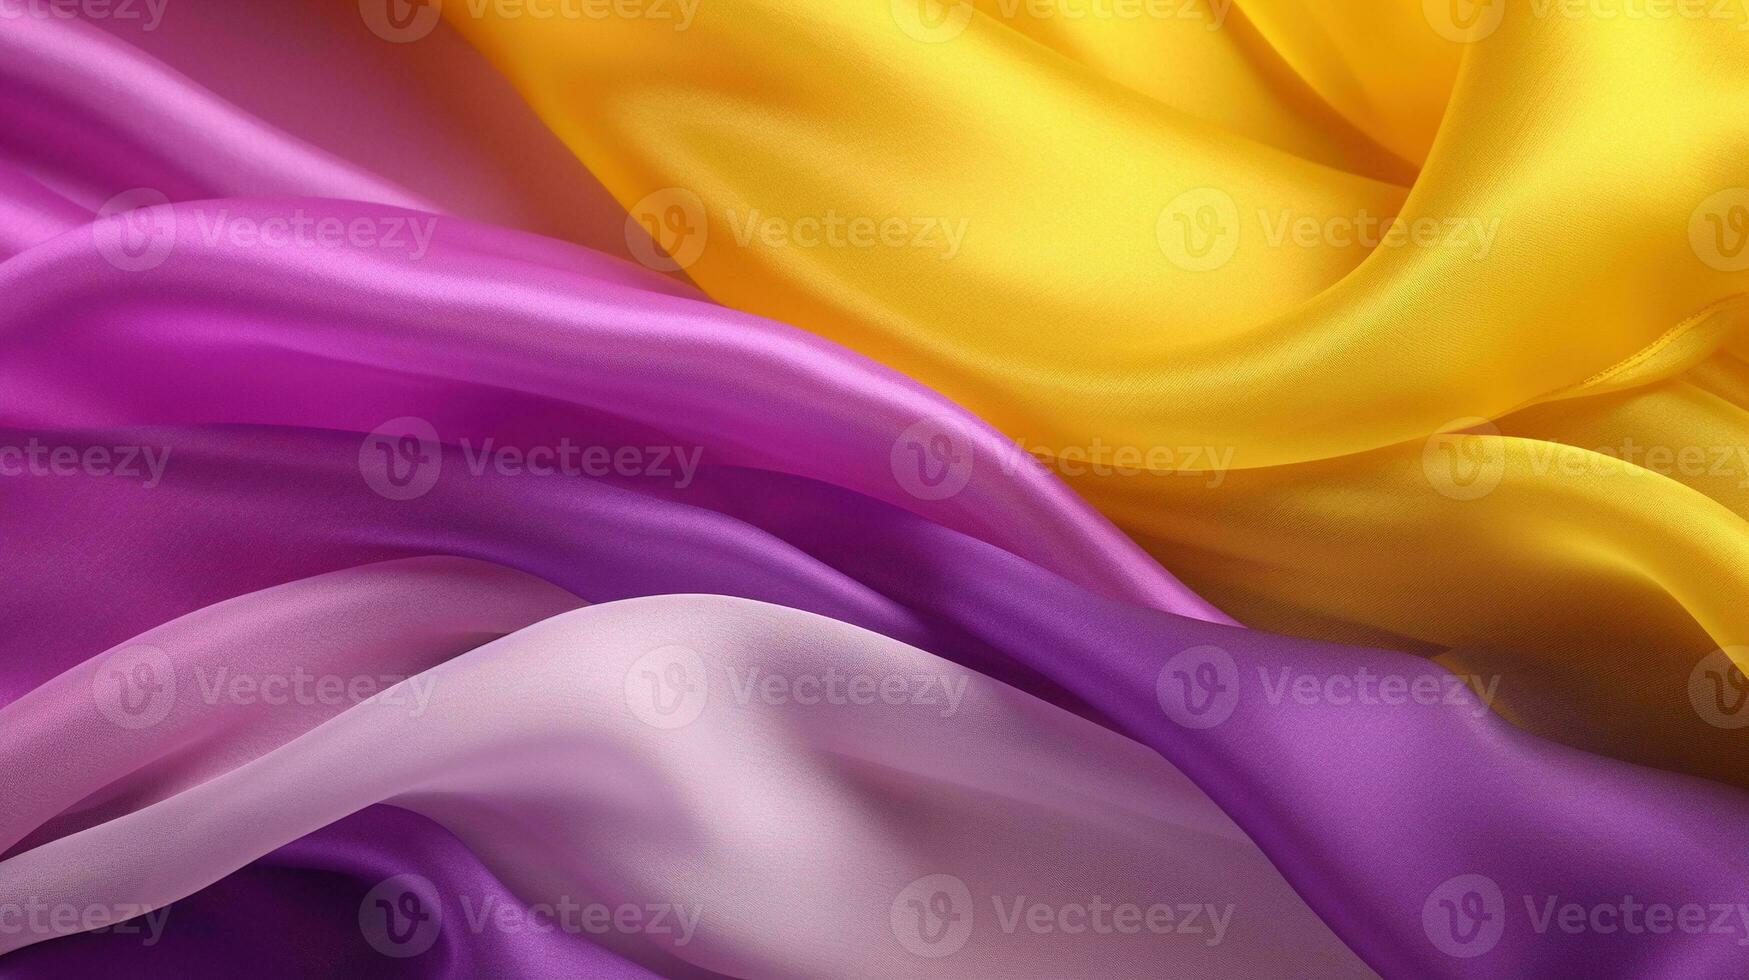 generativo ai, fluindo chiffon tecido textura dentro roxa tolet e amarelo cor. lustroso Primavera bandeira, material 3d efeito, moderno macro fotorrealista abstrato fundo ilustração. foto